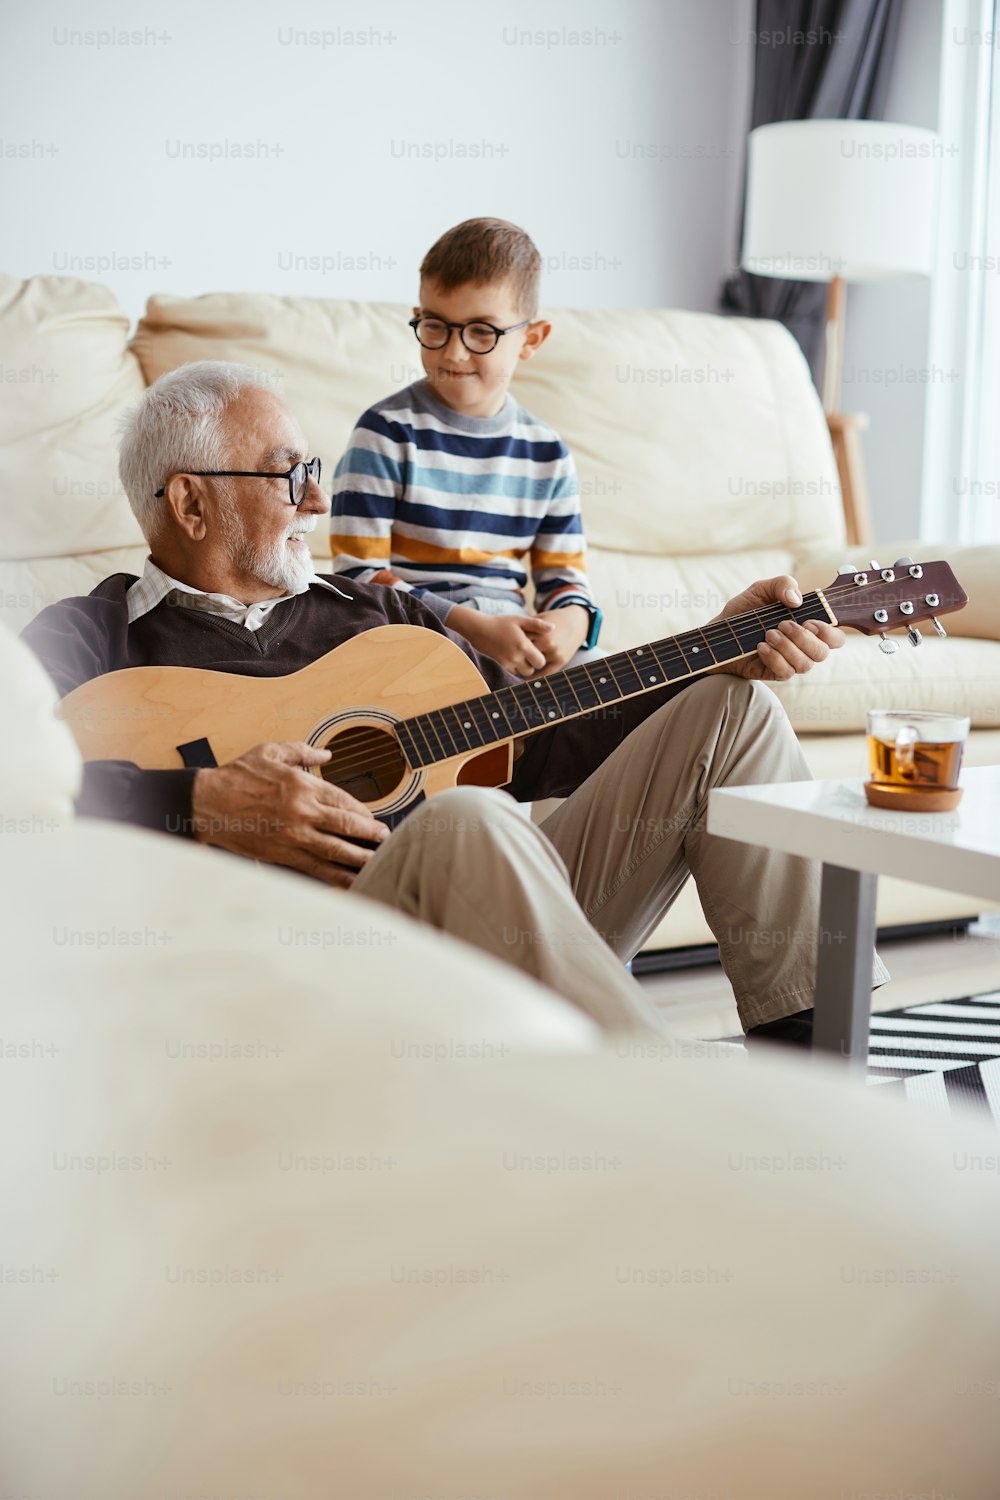 집에서 손자와 시간을 보내면서 어쿠스틱 기타를 연주하는 행복한 할아버지.